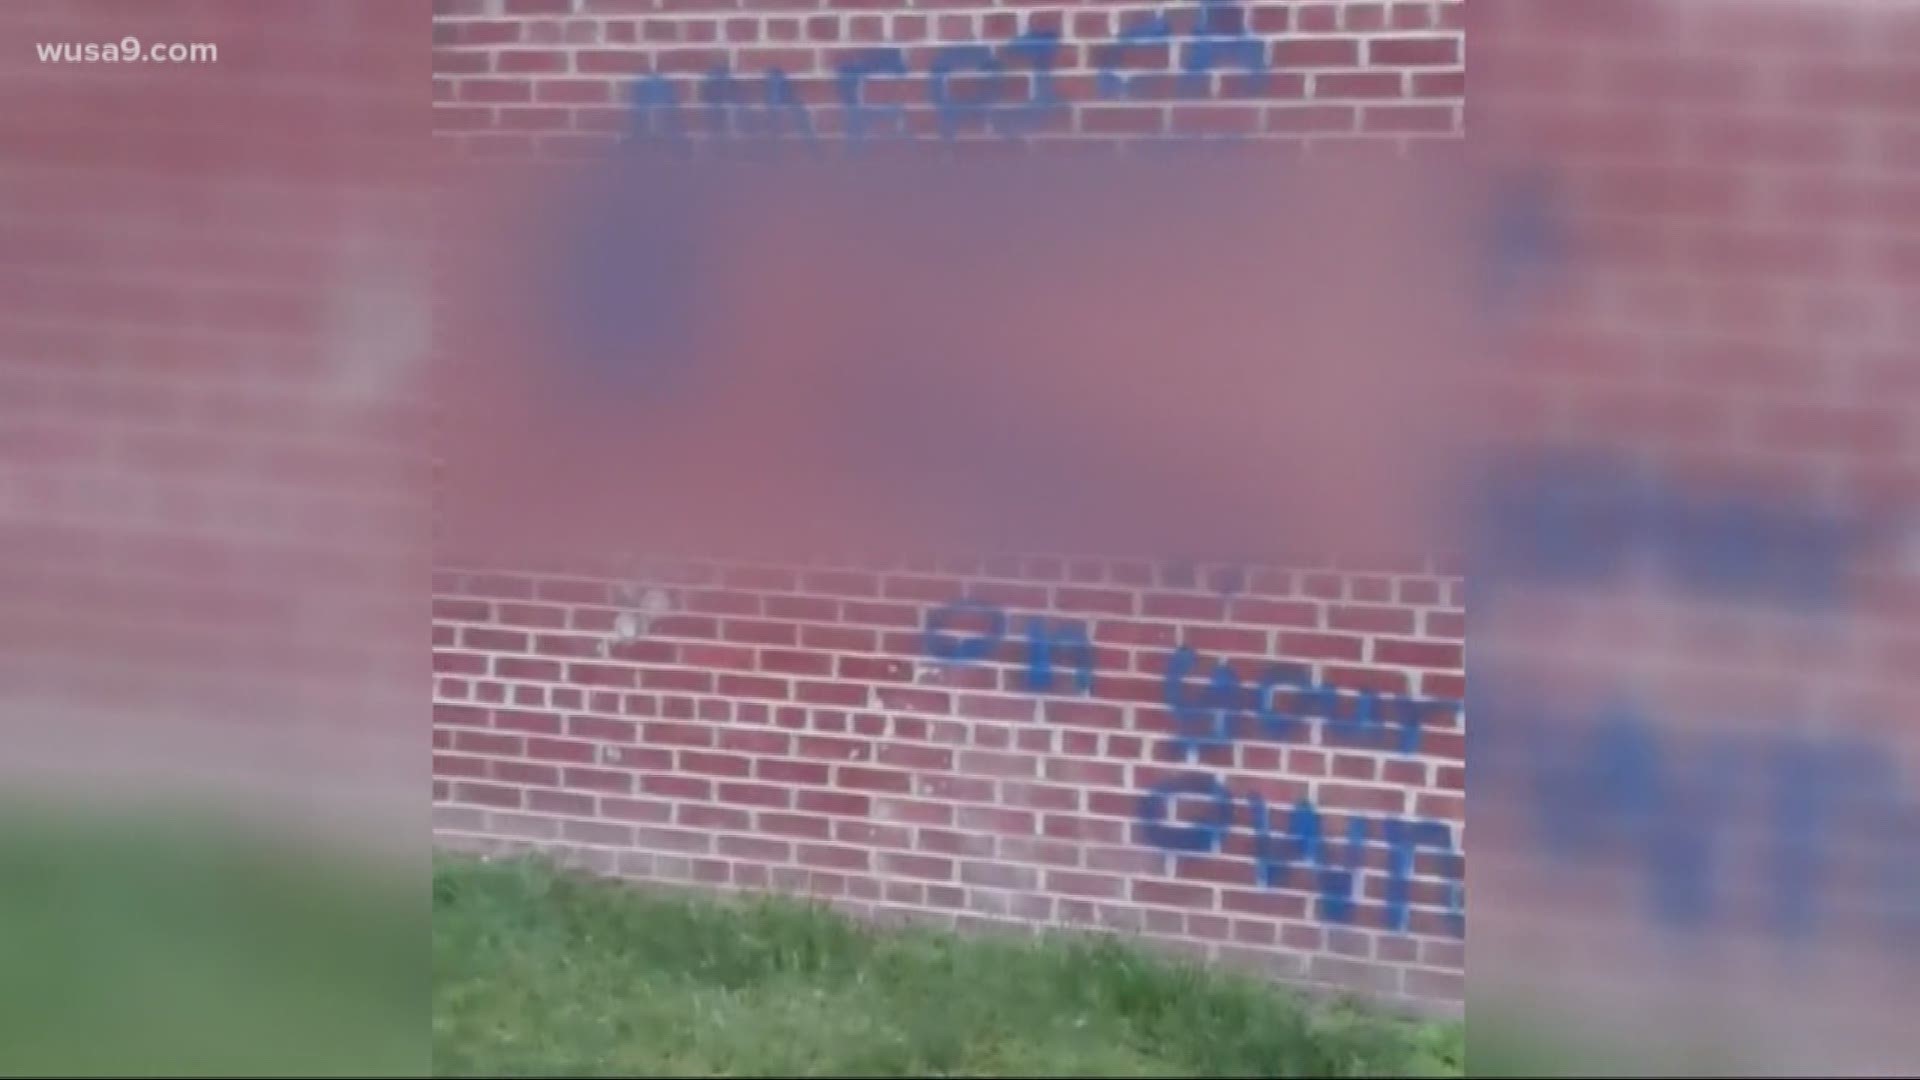 Fairfax County police are investigating the graffiti.